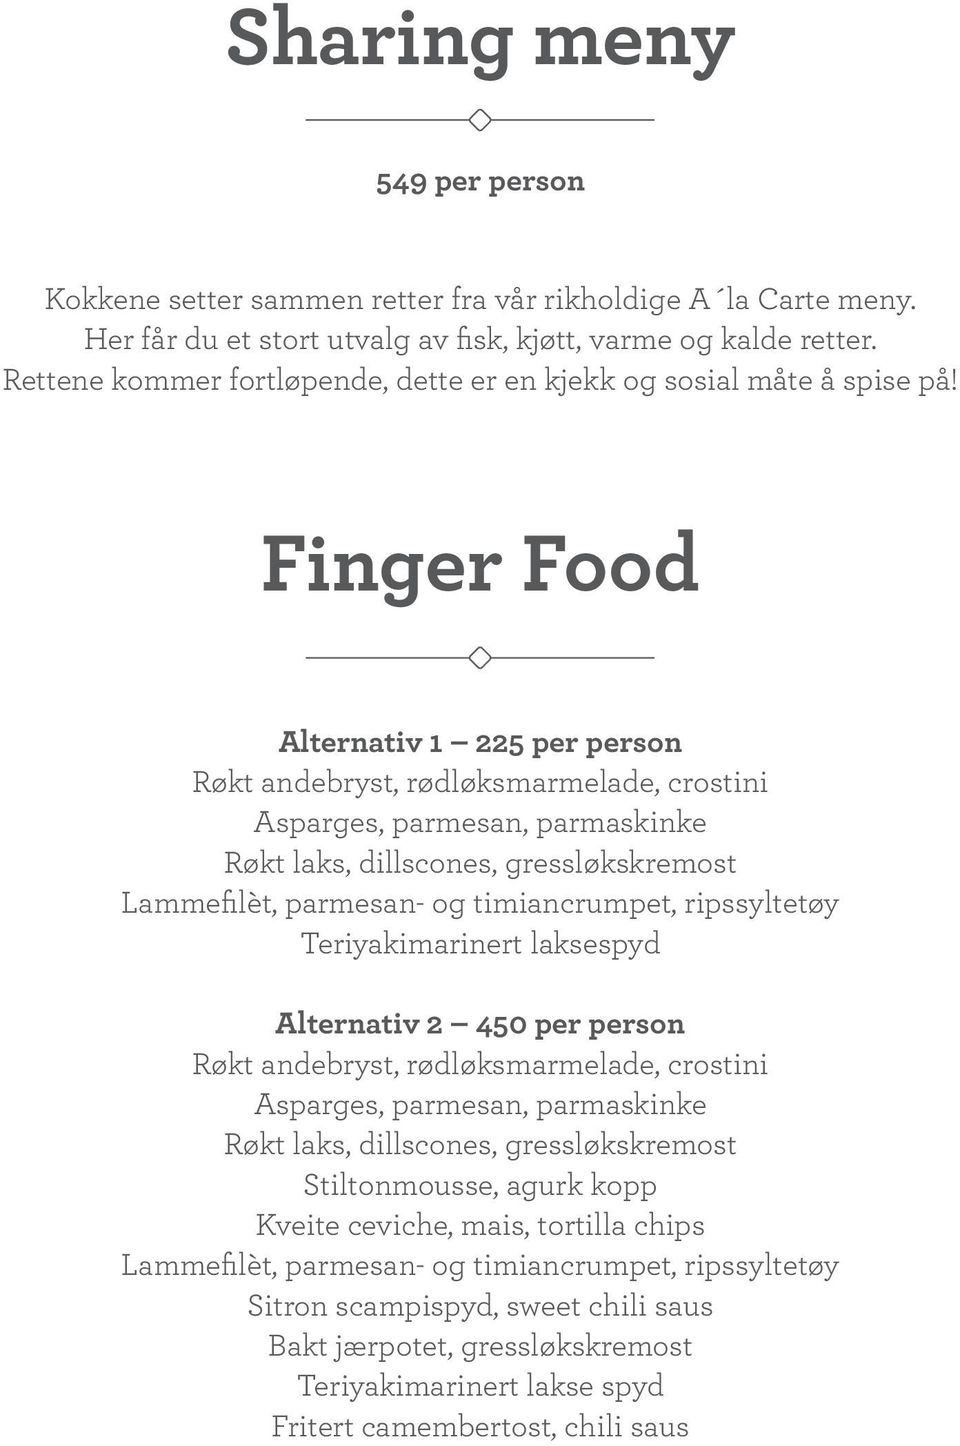 Finger Food Alternativ 1 225 per person Røkt andebryst, rødløksmarmelade, crostini Asparges, parmesan, parmaskinke Røkt laks, dillscones, gressløkskremost Lammefilèt, parmesan- og timiancrumpet,